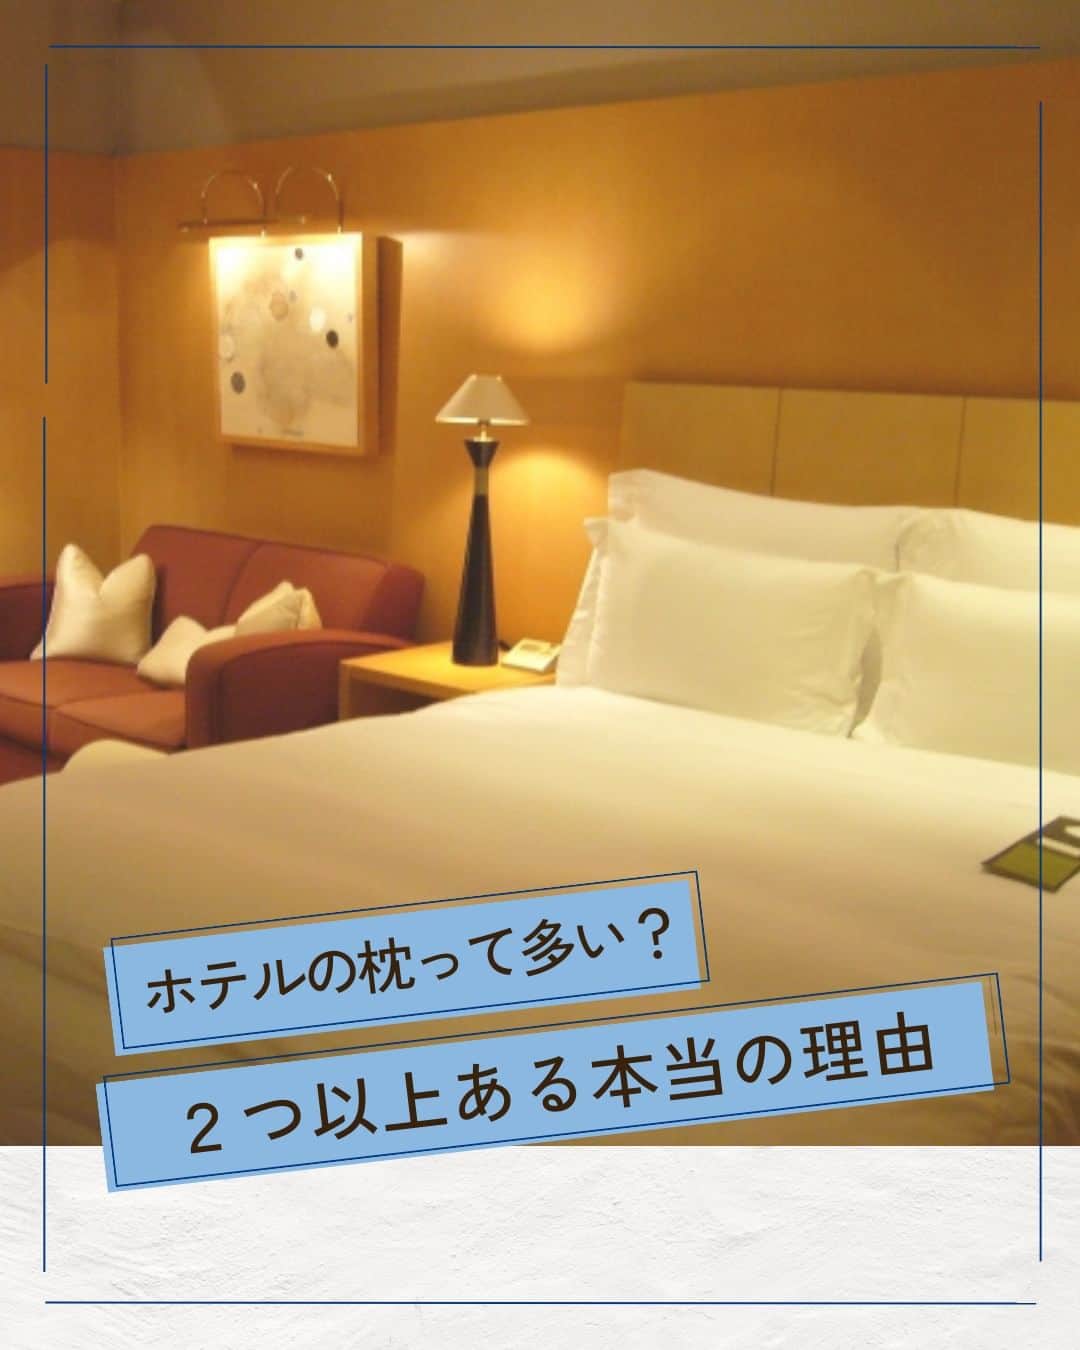 D-Breath Co., Ltd. のインスタグラム：「>>>続きをみる  こんばんは！ ディーブレスです！ @d_breath.co.jp  今まで気にした事ないかもしれませんが、 ホテルに枕が多く置いてあることはないですか？🤔  もちろん、すべてのホテルには当てはまりませんが 一流ホテルには大体2つはあります！  なぜ、こんなに枕が多いのか？ ホテル側にも理由があるのです✨  ┄ ┄ ┄ ┄ ┄ ┄ ┄ ┄ ┄ ┄ ┄ ┄ ┄  どこよりも気持ちいい寝具を目指す🌙  ディーブレスという社名は、 DEEP BREATH＝深呼吸という言葉から生まれました。  あわただしい暮らしの中で、深呼吸するように、 ゆったりとした時を過ごしていただきたいという想いから、 様々な心安らぐアイテムを開発しています。  ┄ ┄ ┄ ┄ ┄ ┄ ┄ ┄ ┄ ┄ ┄ ┄ ┄ このアカウントでは ・起きたばかりなのに身体がだるおも ・夜なかなか寝付けない ・朝スッキリ起きれない  という方に向けて 睡眠の知識を発信中！  ＼フォローして最上級の眠りを手に入れる／ @d_breath.co.jp  #自律神経 #睡眠 #睡眠の改善 #睡眠不足 #快眠 #更年期 #ストレス #疲労回復 #肩こり解消 #自律神経失調症 #自律神経ケア #自律神経を整える #ストレスケア #ディーブレス #枕 #ホテルの枕 #まくら」